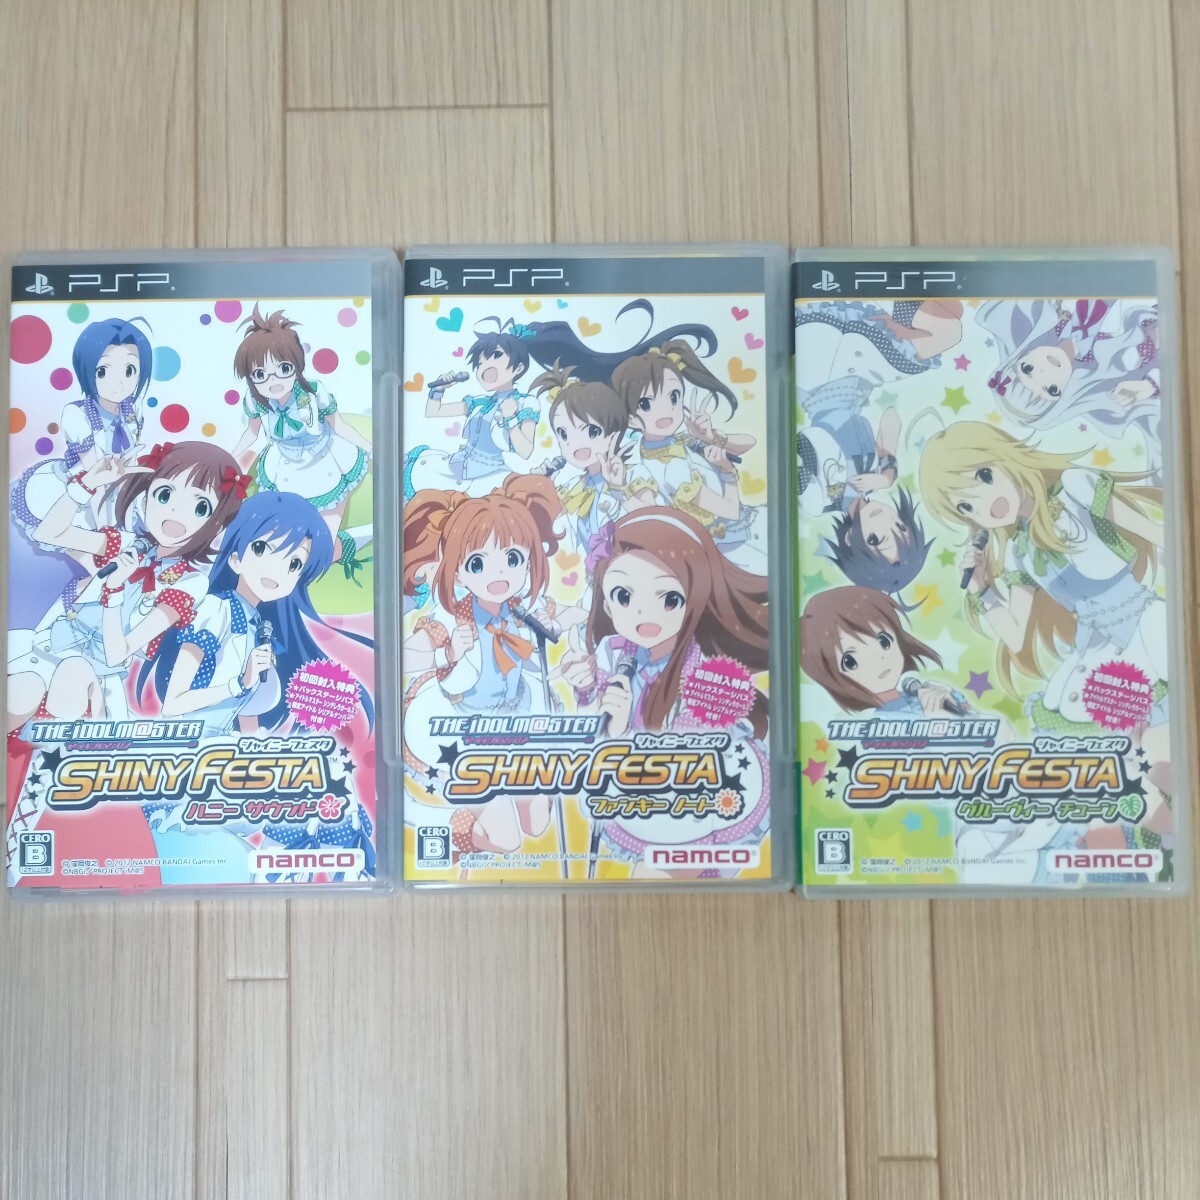 PSP アイドルマスター シャイニーフェスタ 3本セット 中古の画像1